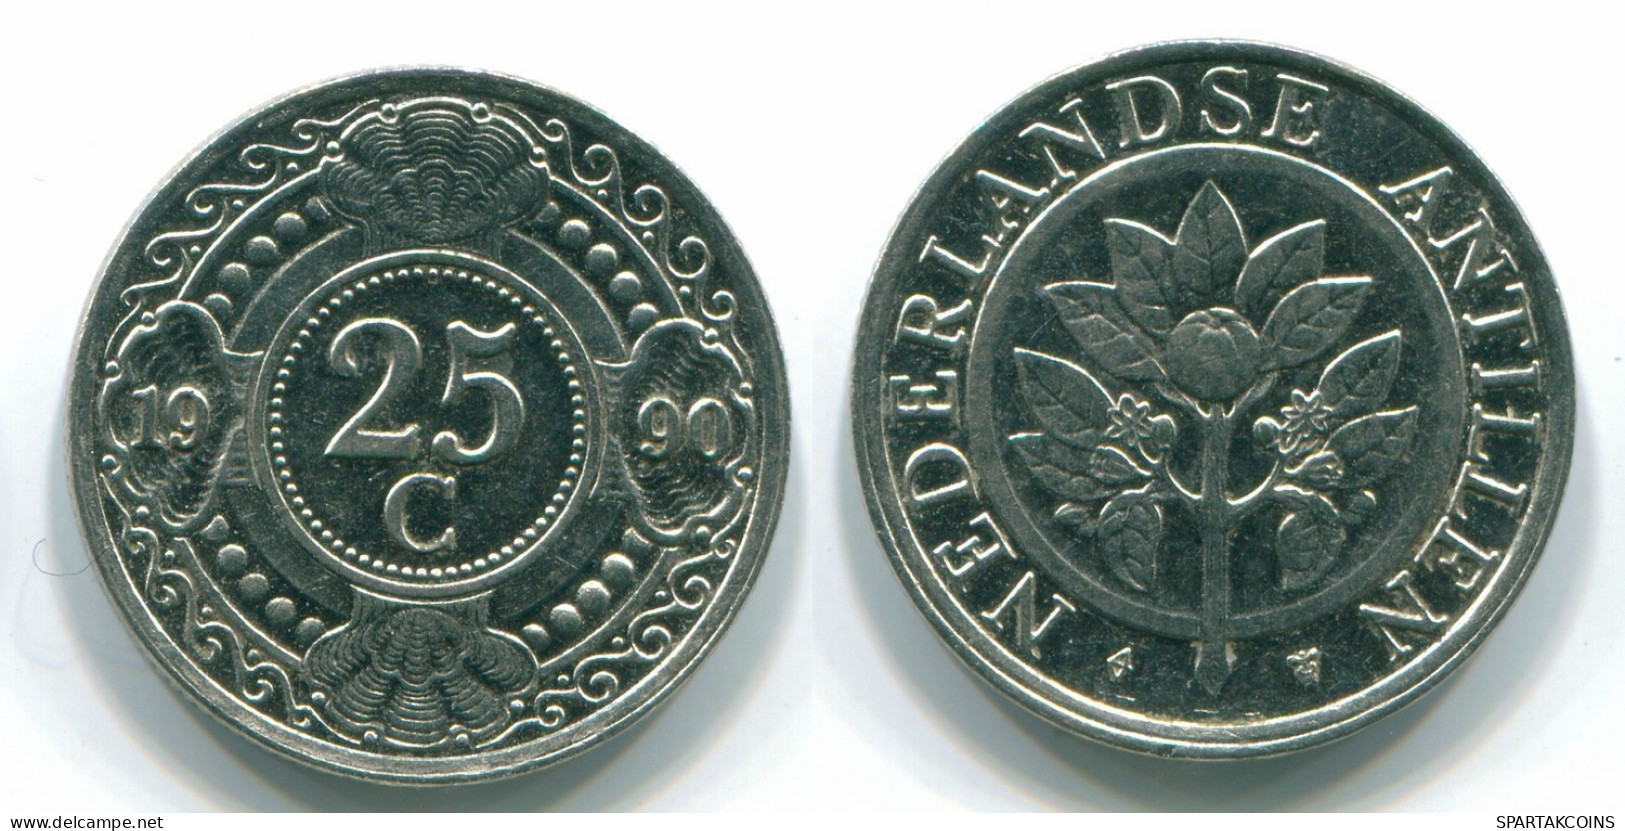 25 CENTS 1990 NETHERLANDS ANTILLES Nickel Colonial Coin #S11259.U.A - Niederländische Antillen